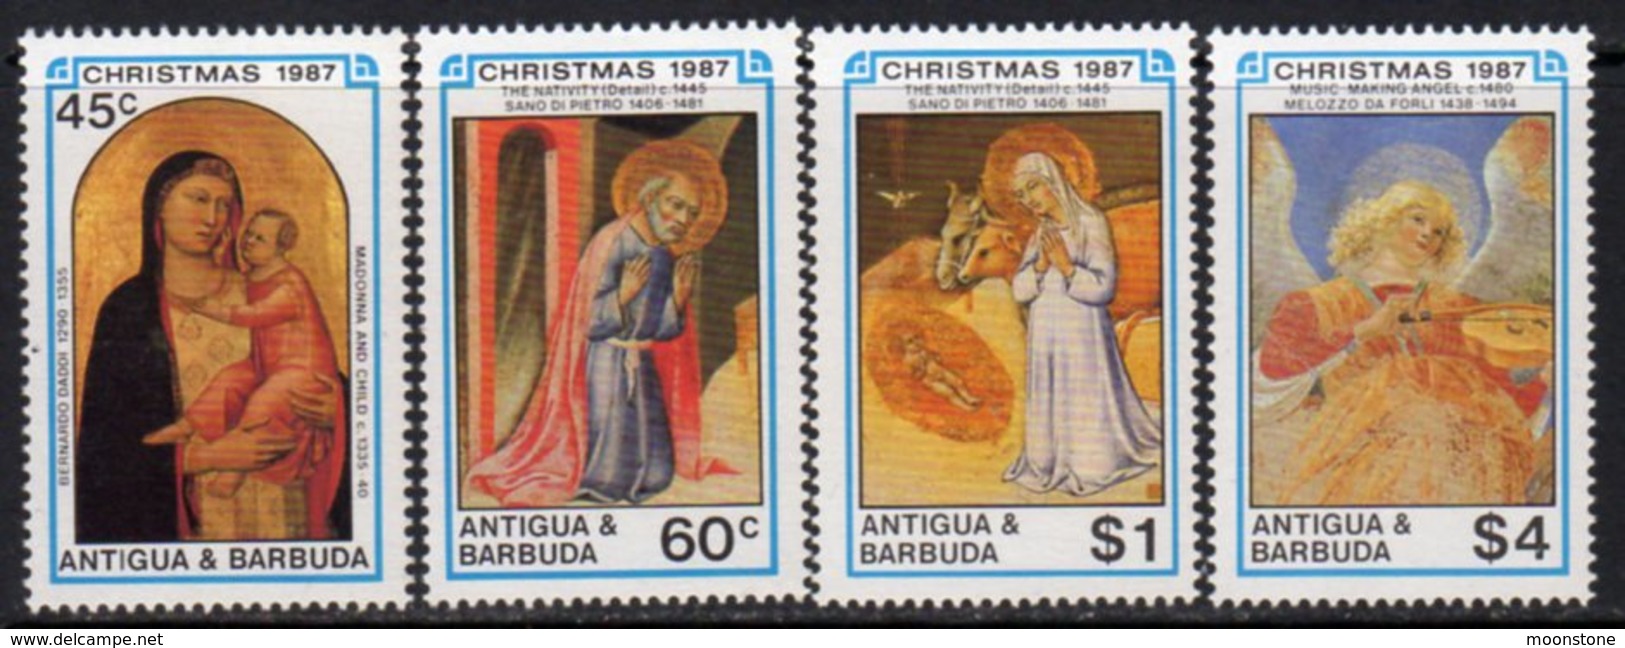 Antigua & Barbuda 1987 Christmas Set Of 4, MNH, SG 1144/7 - Antigua And Barbuda (1981-...)